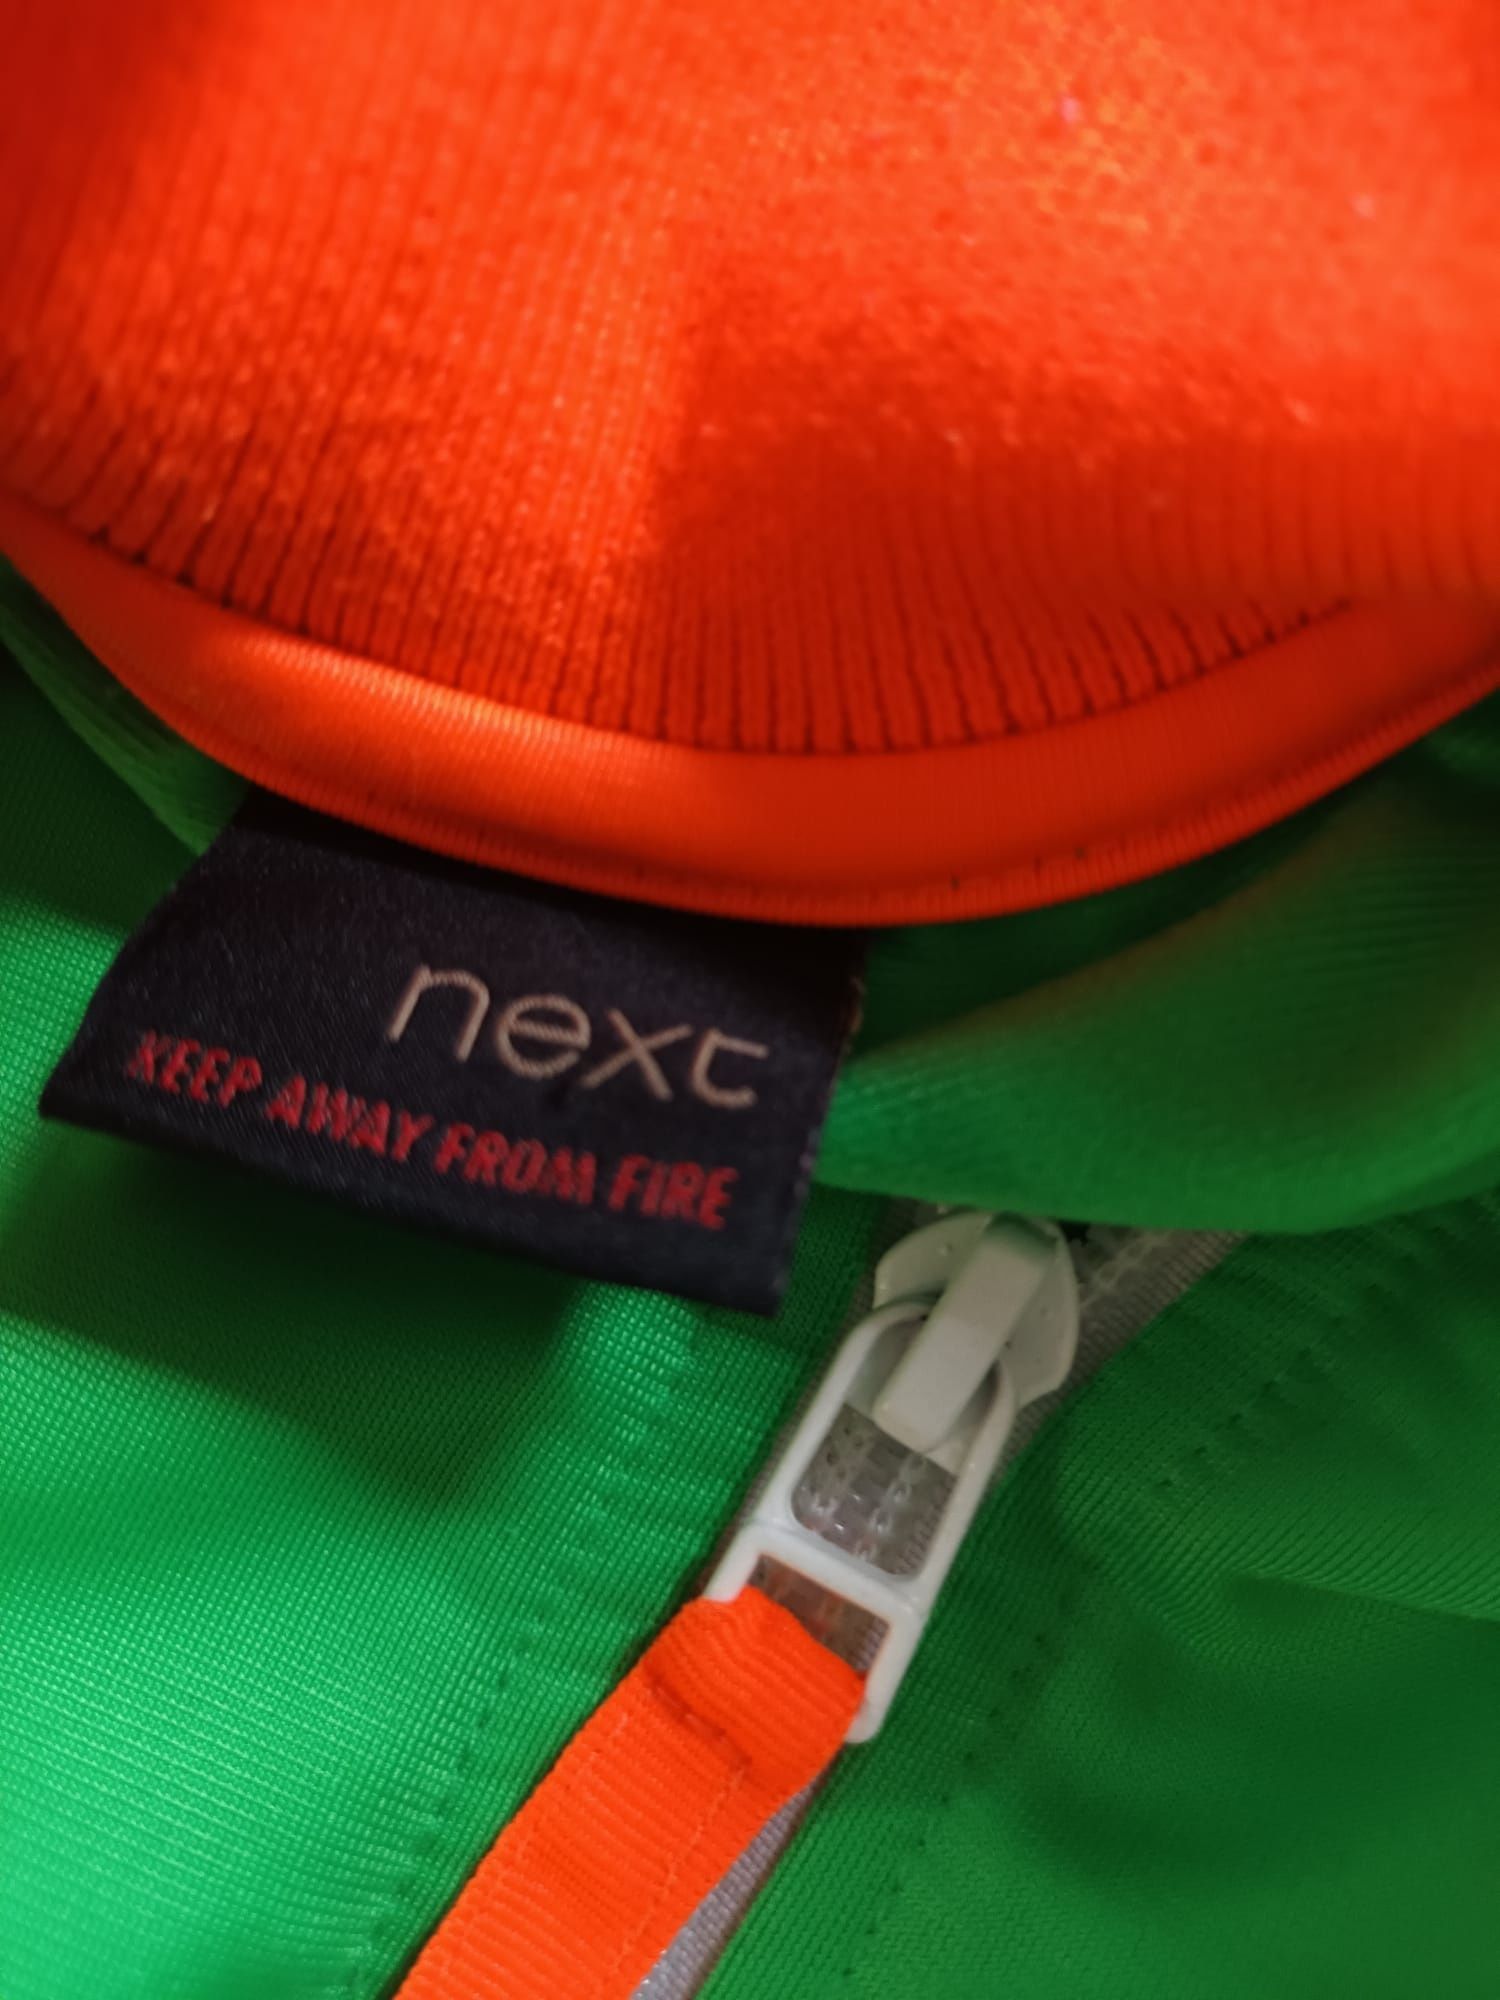 NEXT bluza rozpinana kardigan 98 żywe kolory neon nike